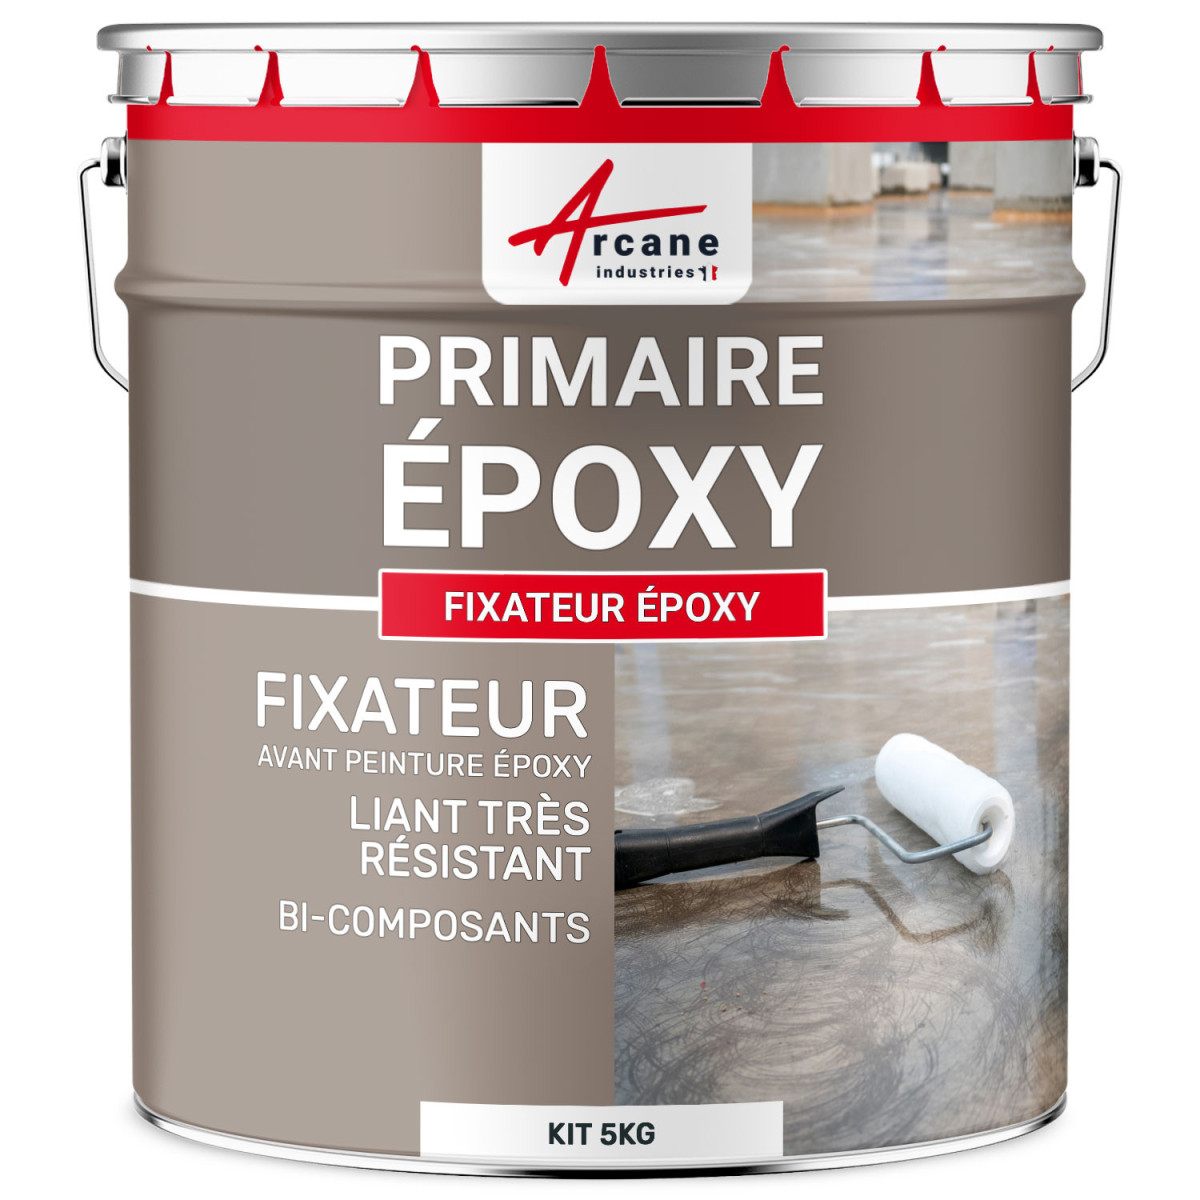 https://maison-etanche-3.images-static.com/41376-thickbox_default/fixateur-epoxy-fixateur-epoxy-primaire-sous-couche-impregnation-mortier-beton-pierre-metaux-bois-verre-polyester.jpg